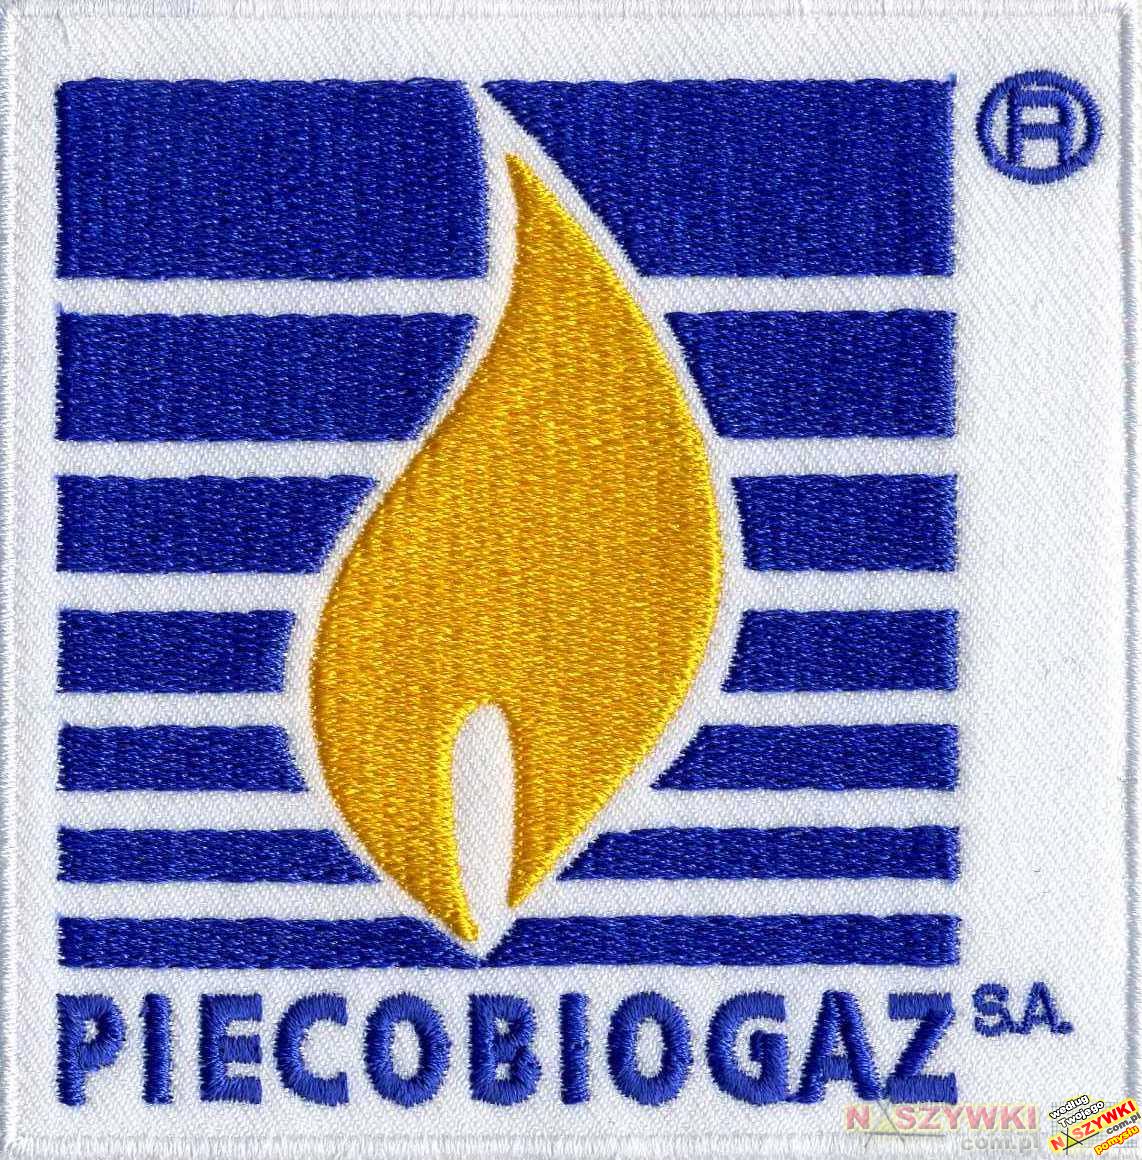 PiecoBioGaz S.A.